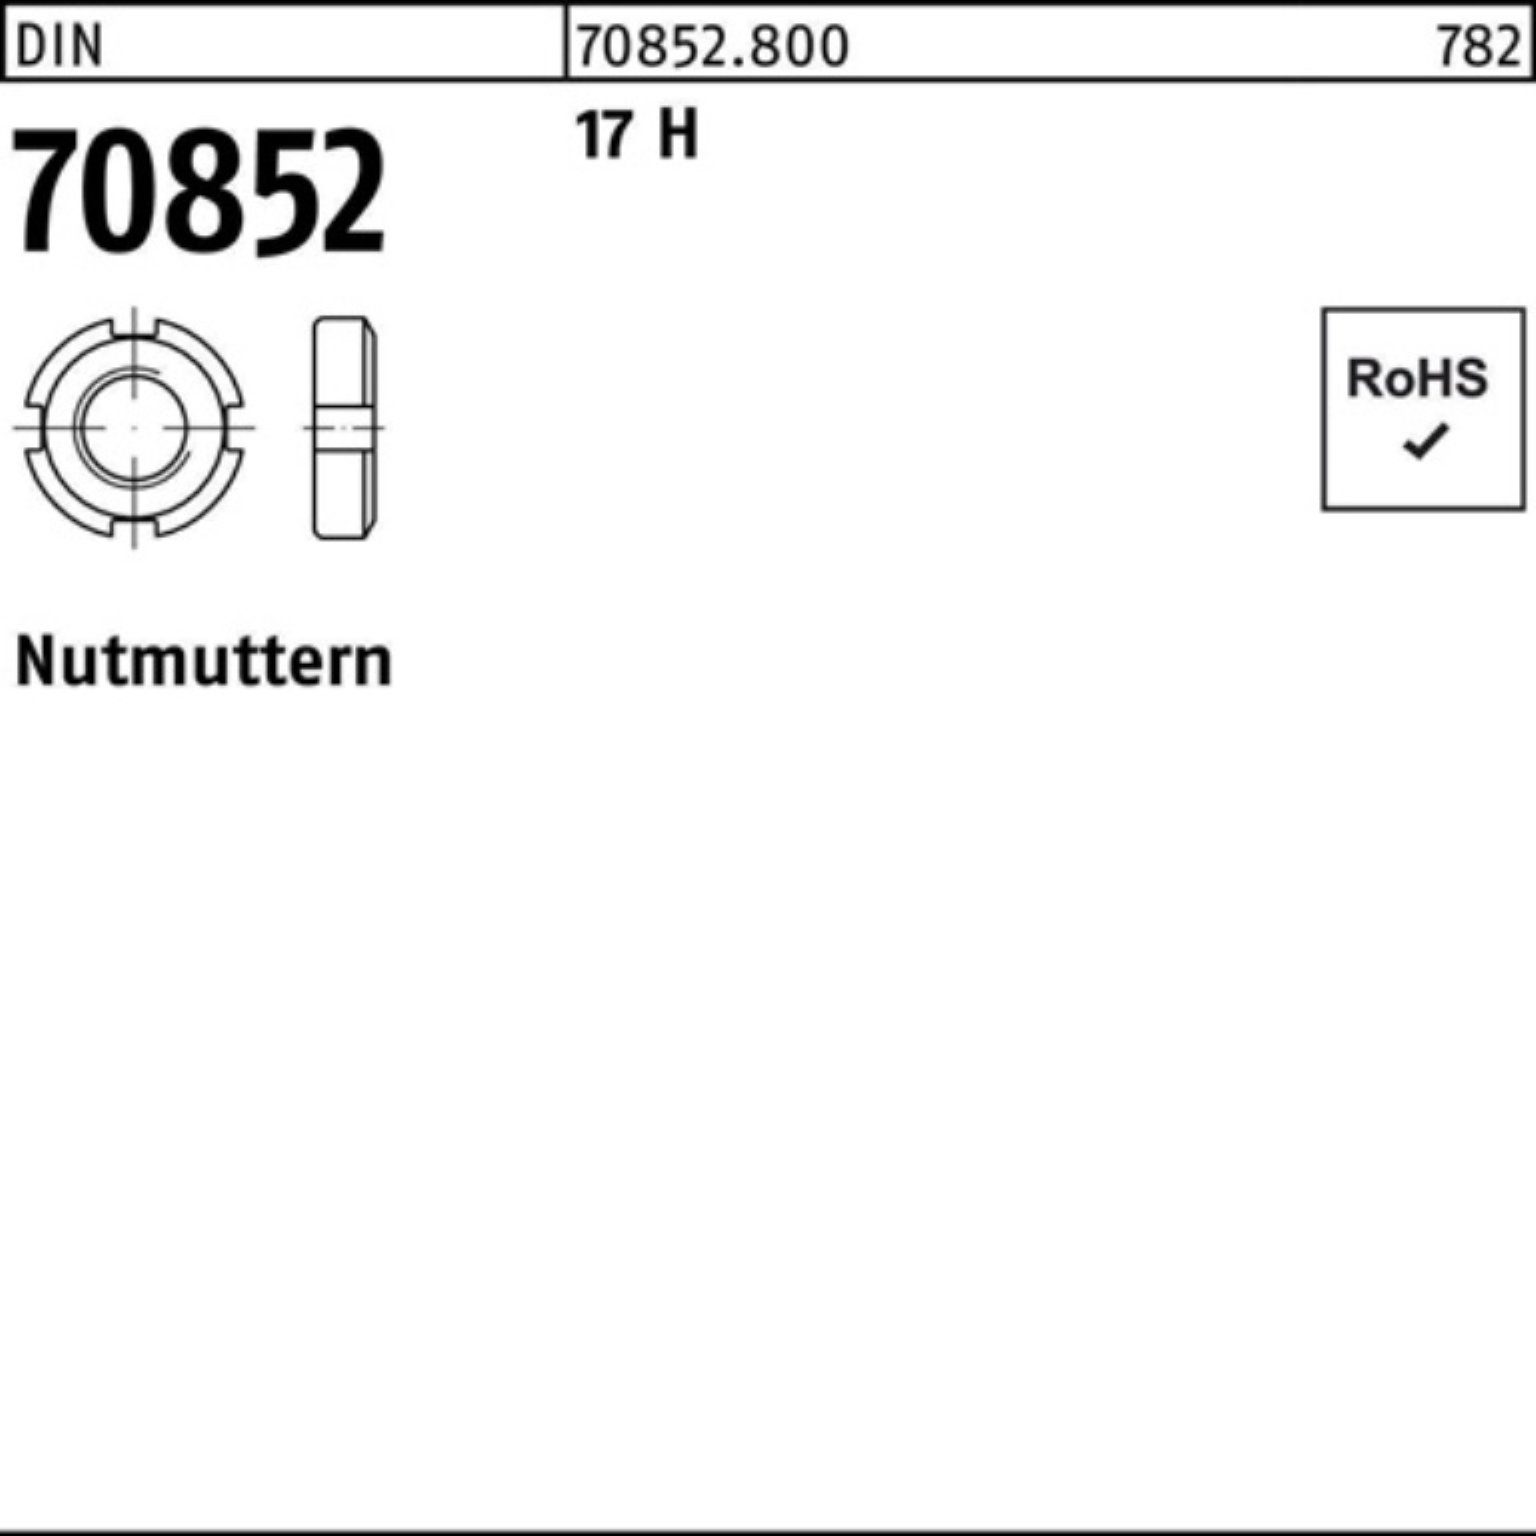 Reyher Nutmutter 100er Pack Nutmutter DIN 70852 M45x 1,5 17 H 1 Stück DIN 70852 17 H N